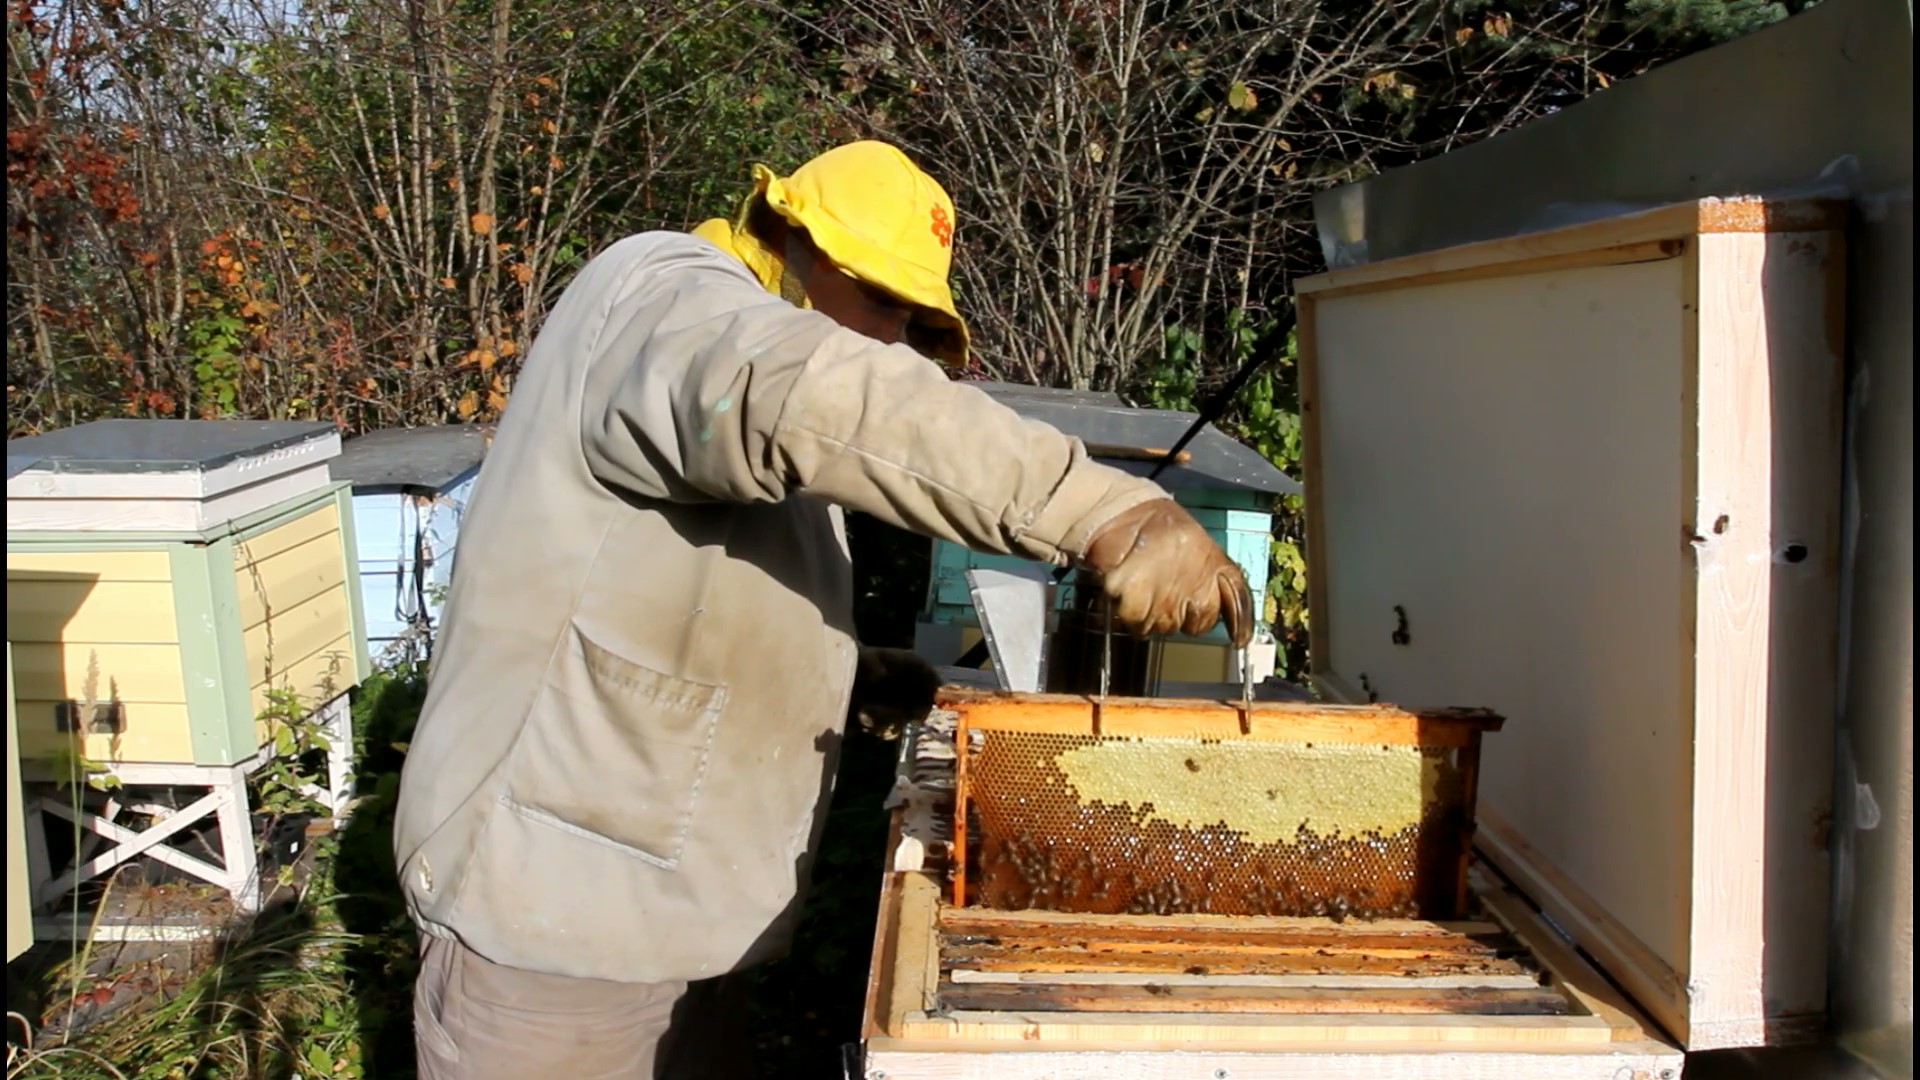 Видео пчеловодство новинки. Помещение для откачки меда. Пчелы на медосборе. Приусадебная пасека. Осташов Пчеловодство.